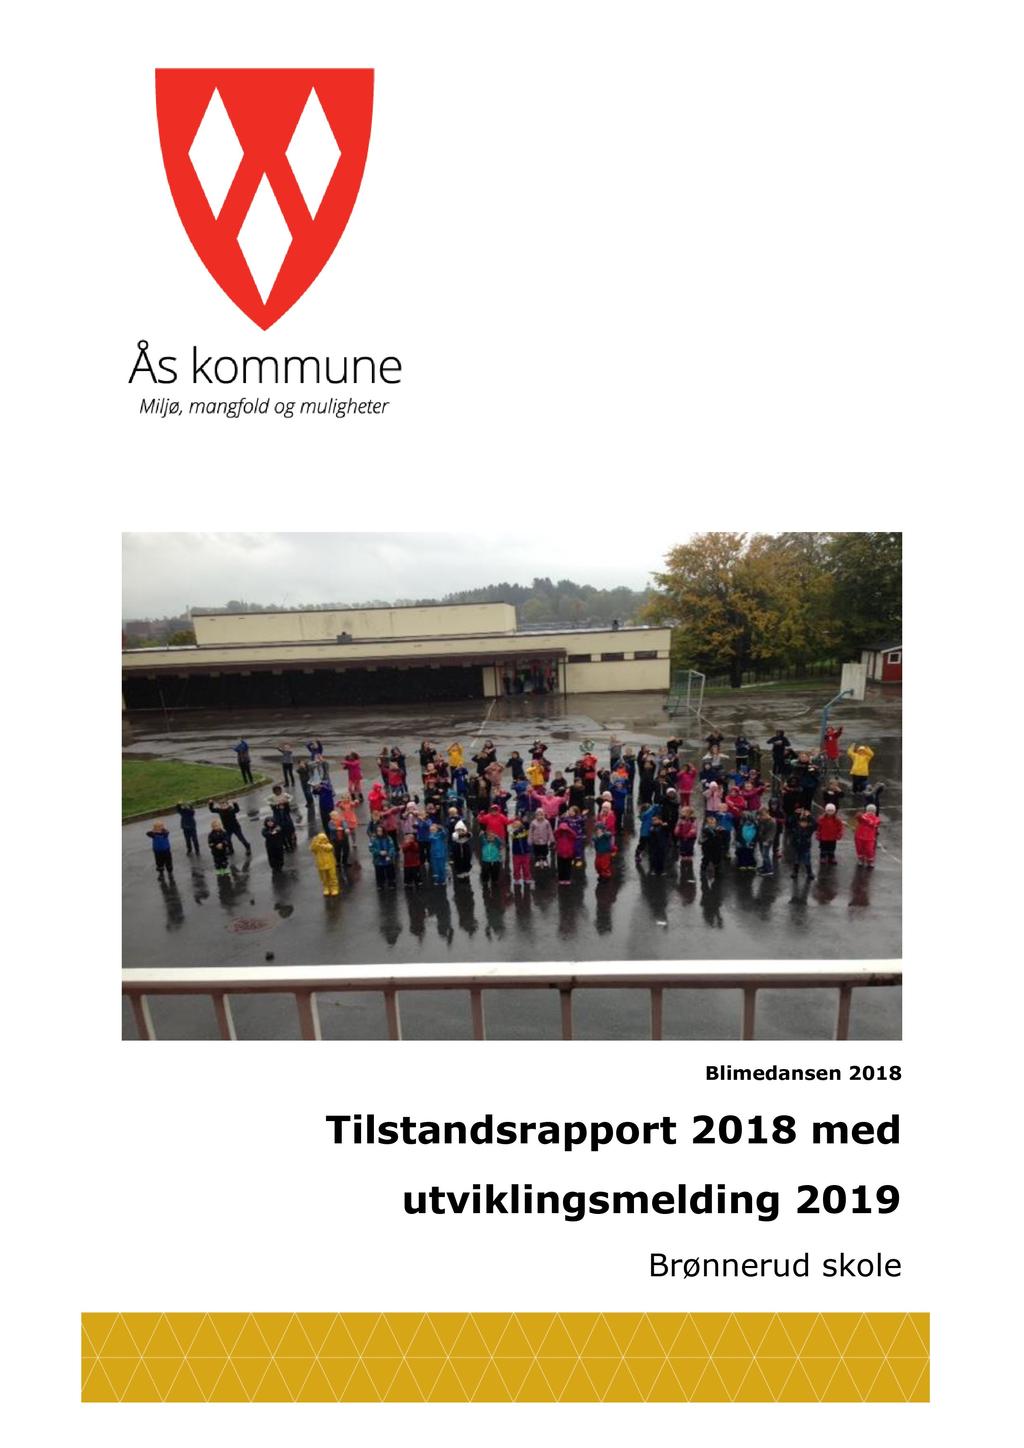 Blimedansen 2018 Tilstandsrapport 2018